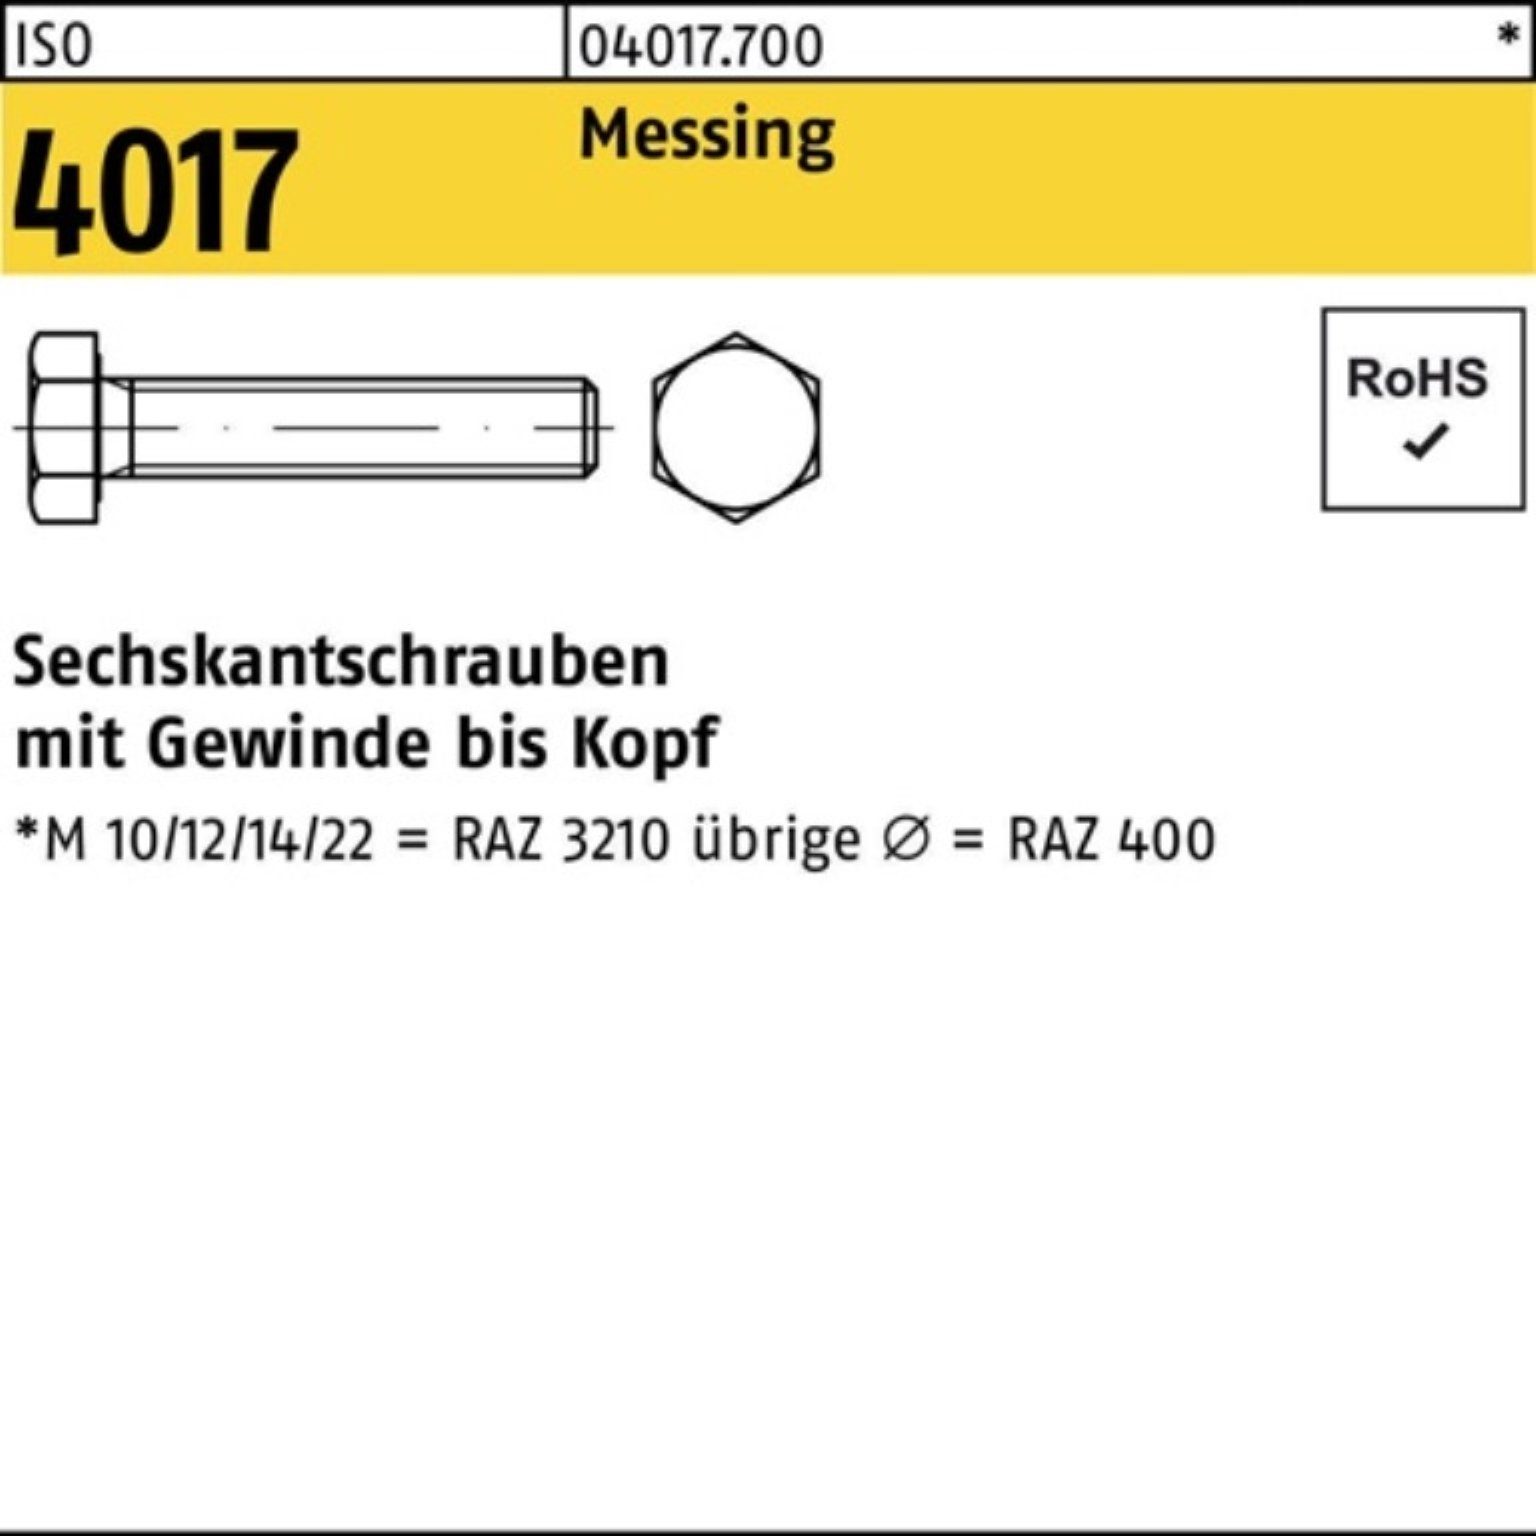 Bufab Sechskantschraube 100er Pack Sechskantschraube Messing 100 VG 4017 M8x 16 ISO Stück ISO